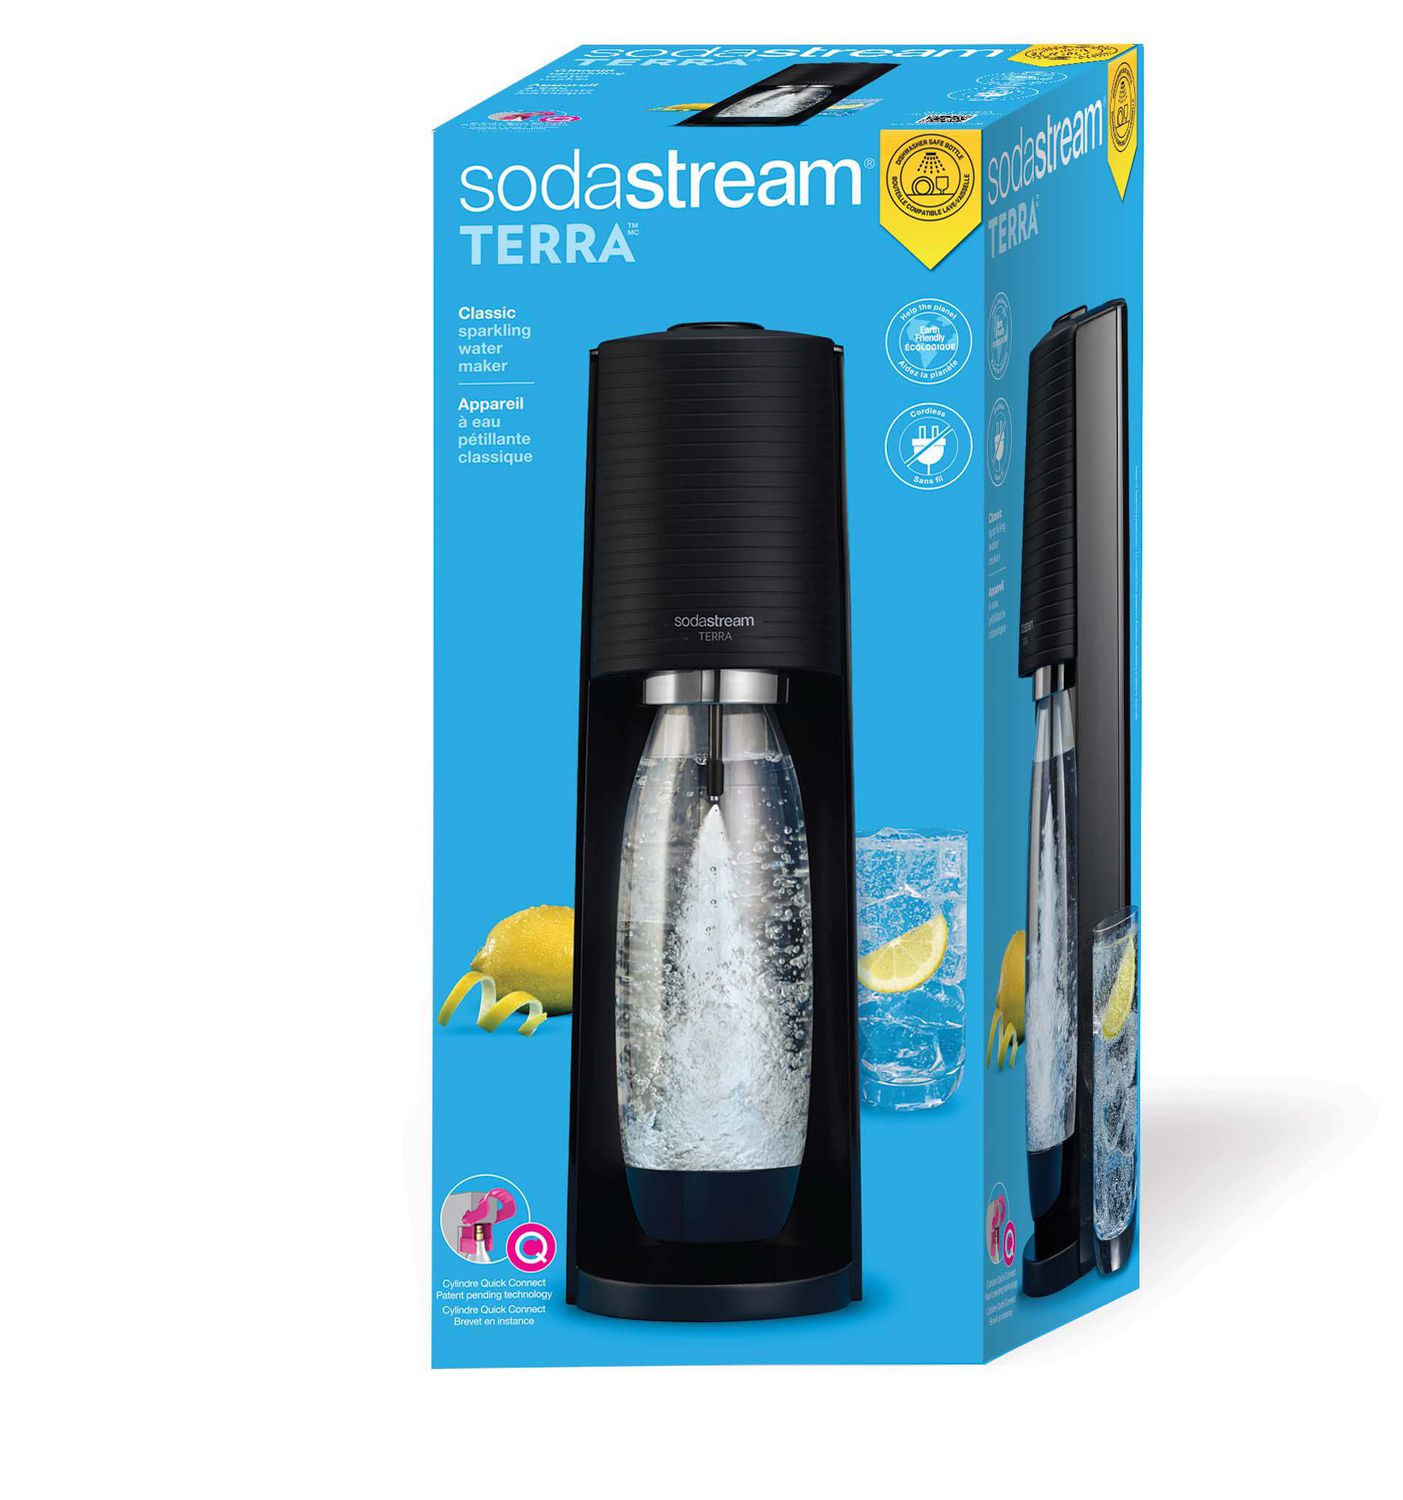 Sodastream : bouteille nomade - La cocotte de Créapôle